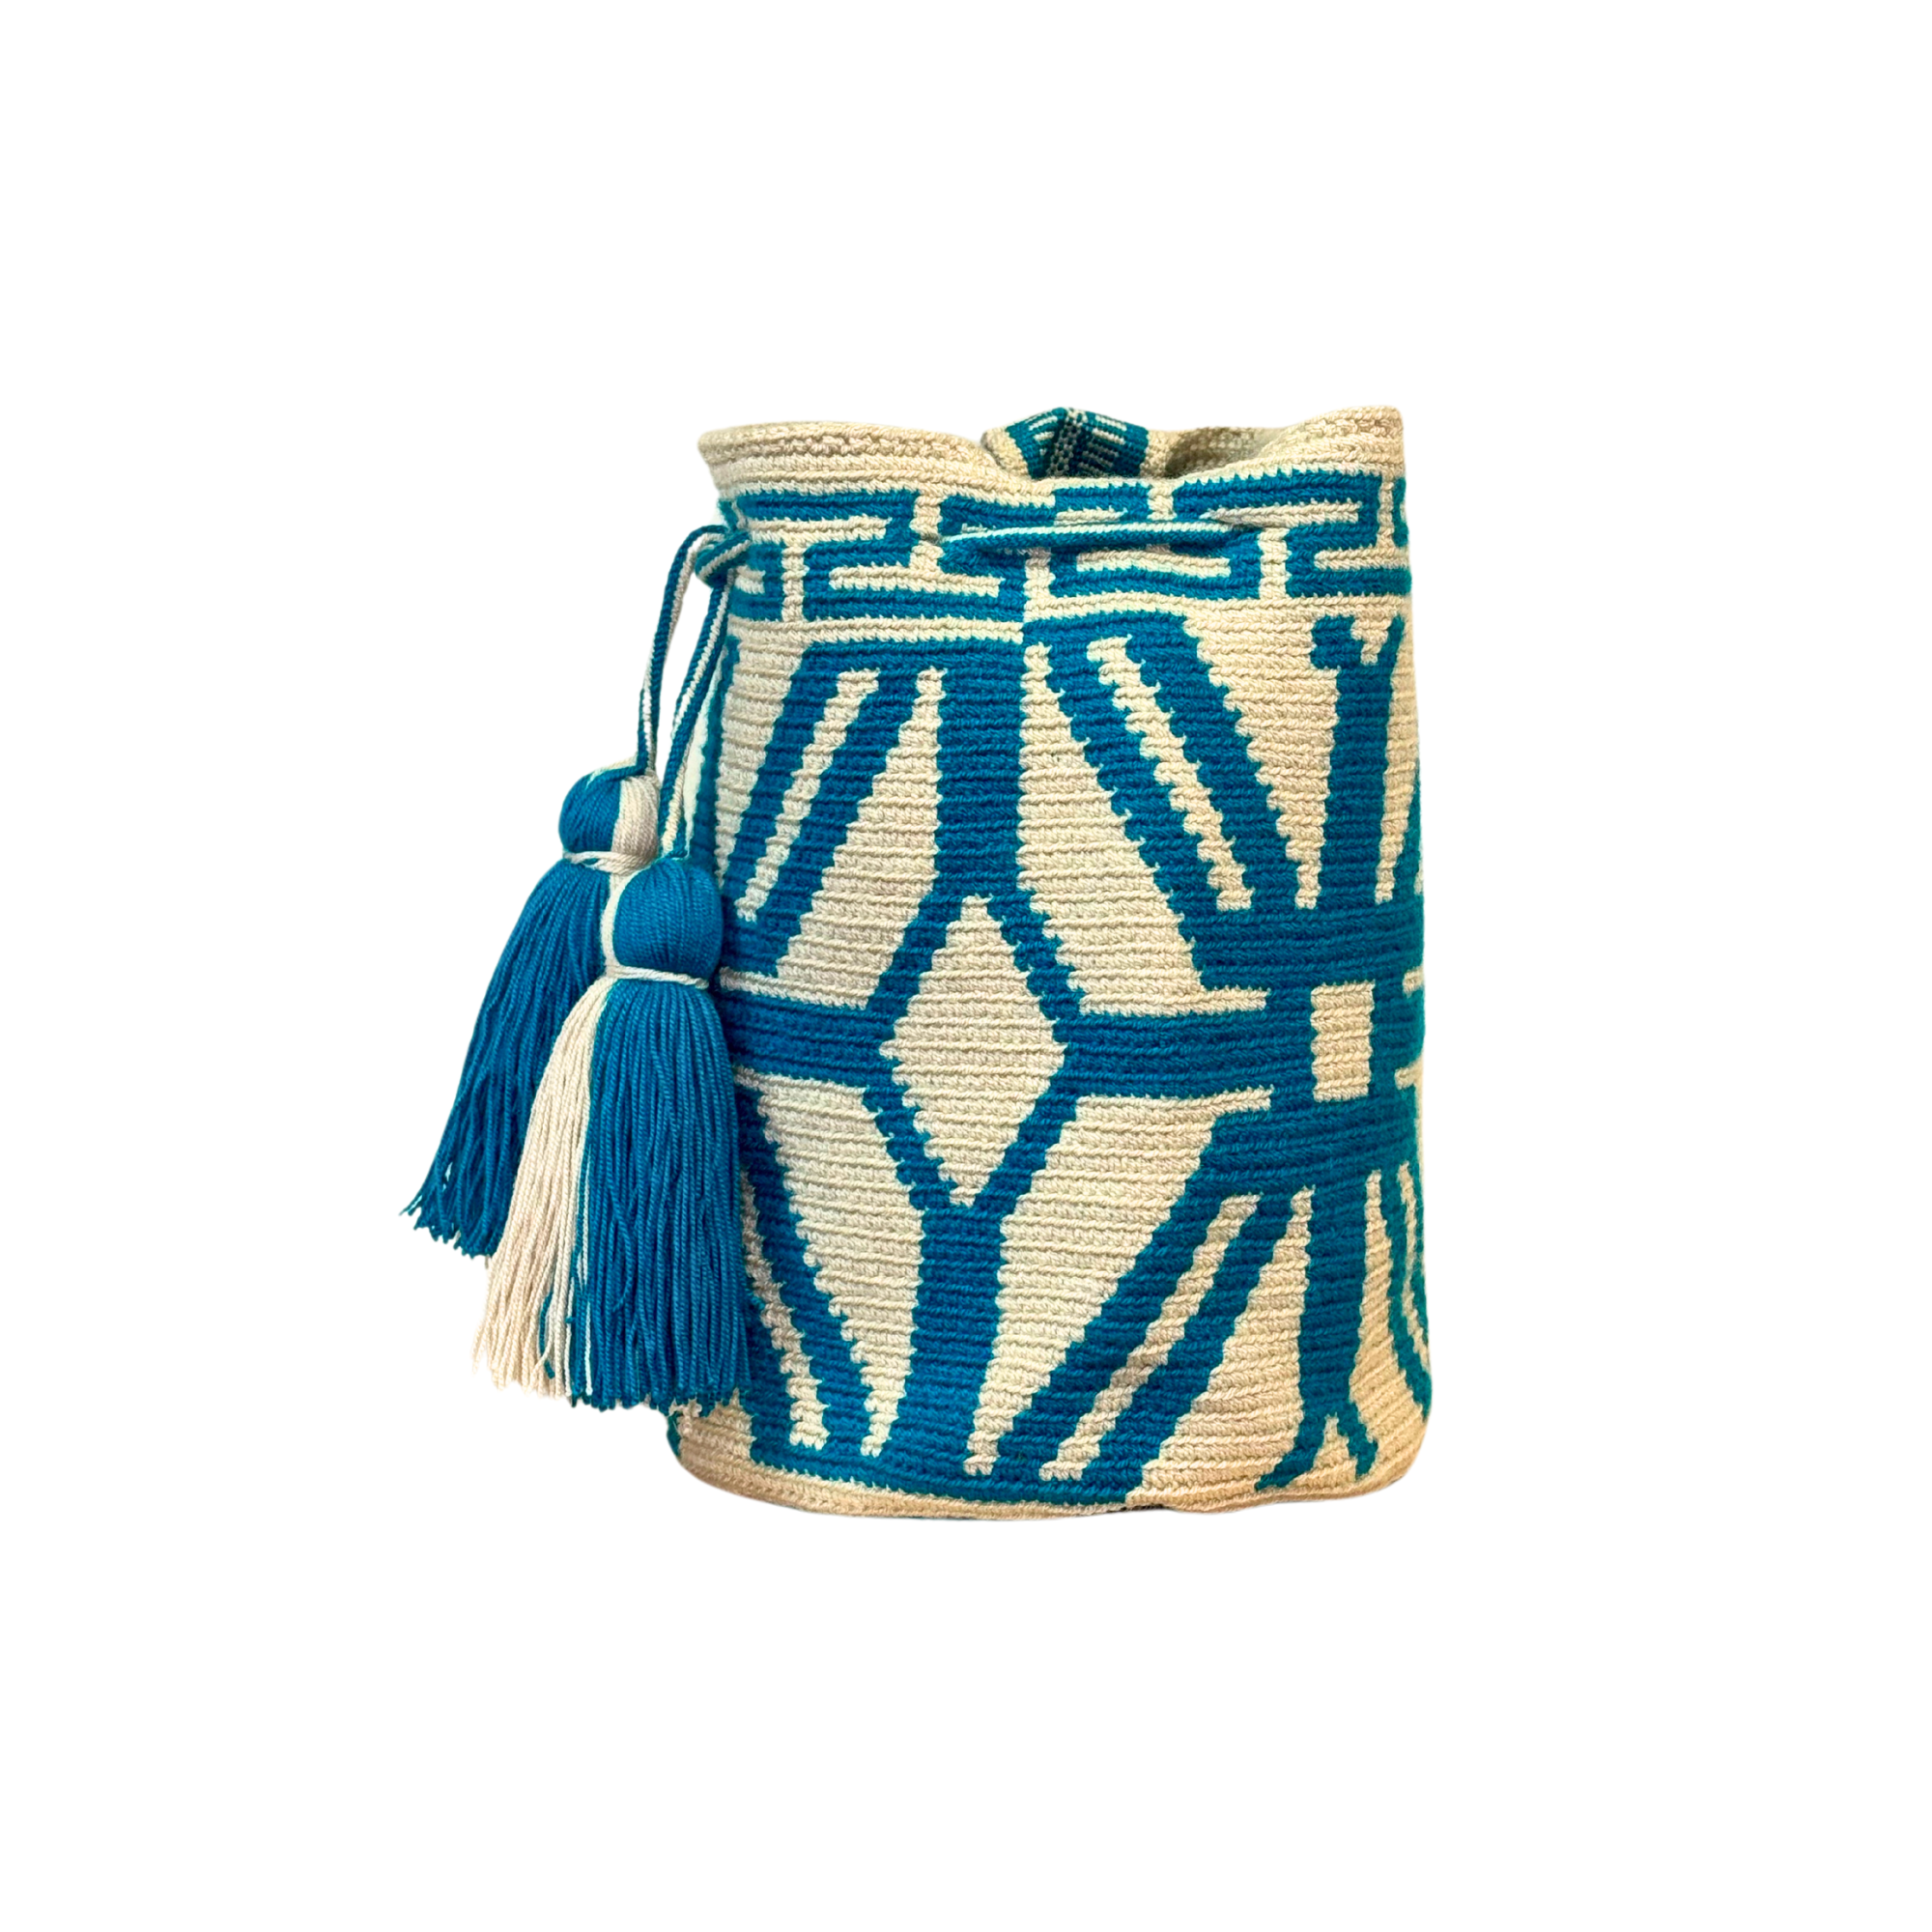 Wayuu mochila bag | Medium Traditional | Solid Strap | Beige and teal